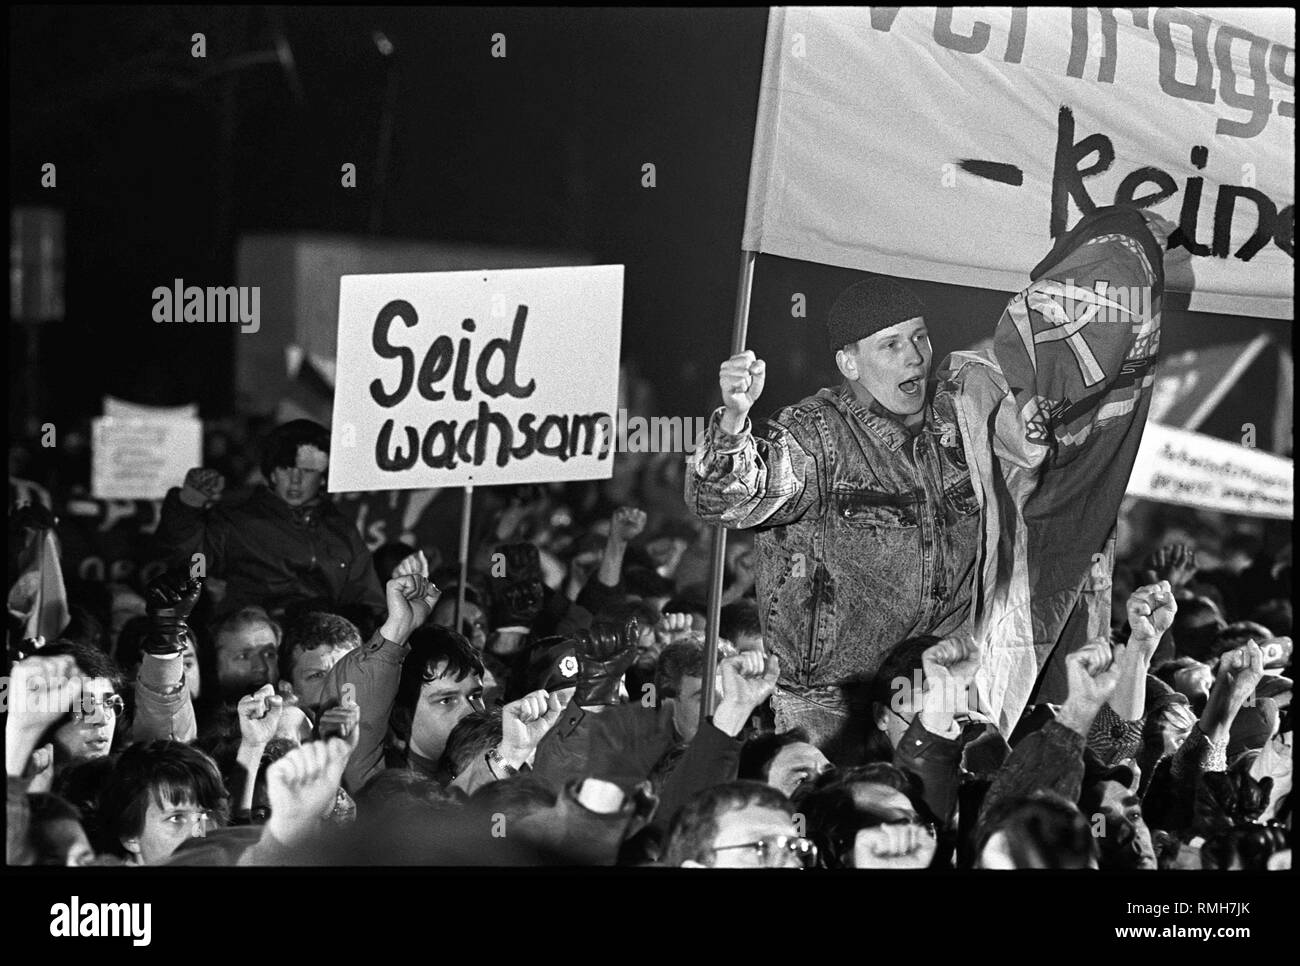 Au Monument commémoratif de guerre soviétique dans le district de Treptow Berlin inconnus ont pulvérisé et anti-Soviétique des slogans fascistes. Le 3 janvier 1990, le SED-PDS a appelé à une manifestation contre les activités néonazies en RDA. La demande d'une protection constitutionnelle de la RDA est aussi fort. Les auteurs de l'smearings n'ont jamais été identifiés. Banque D'Images